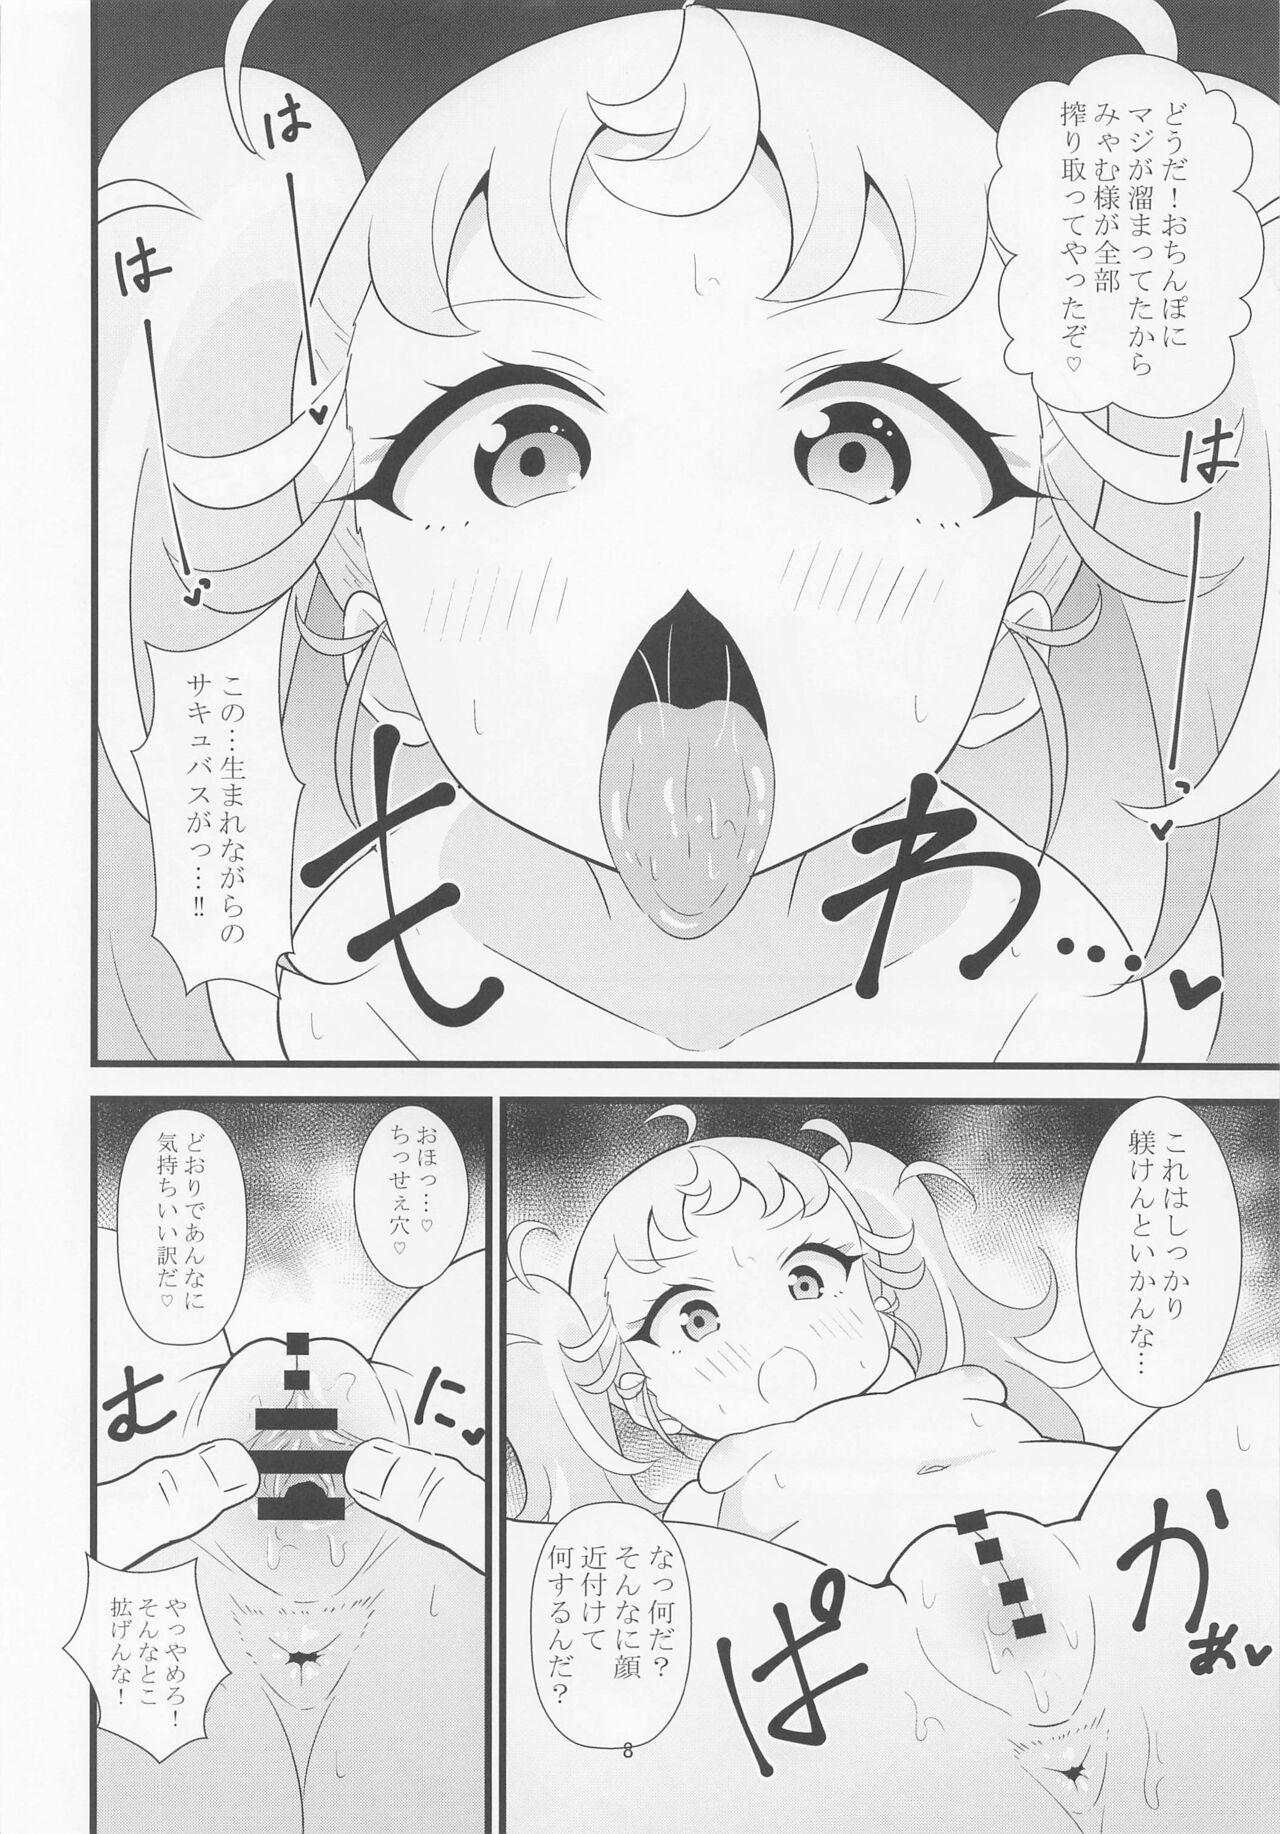 Throat Fuck Manamana no Shitsuke wa Taihen da - Waccha primagi 18 Porn - Page 7